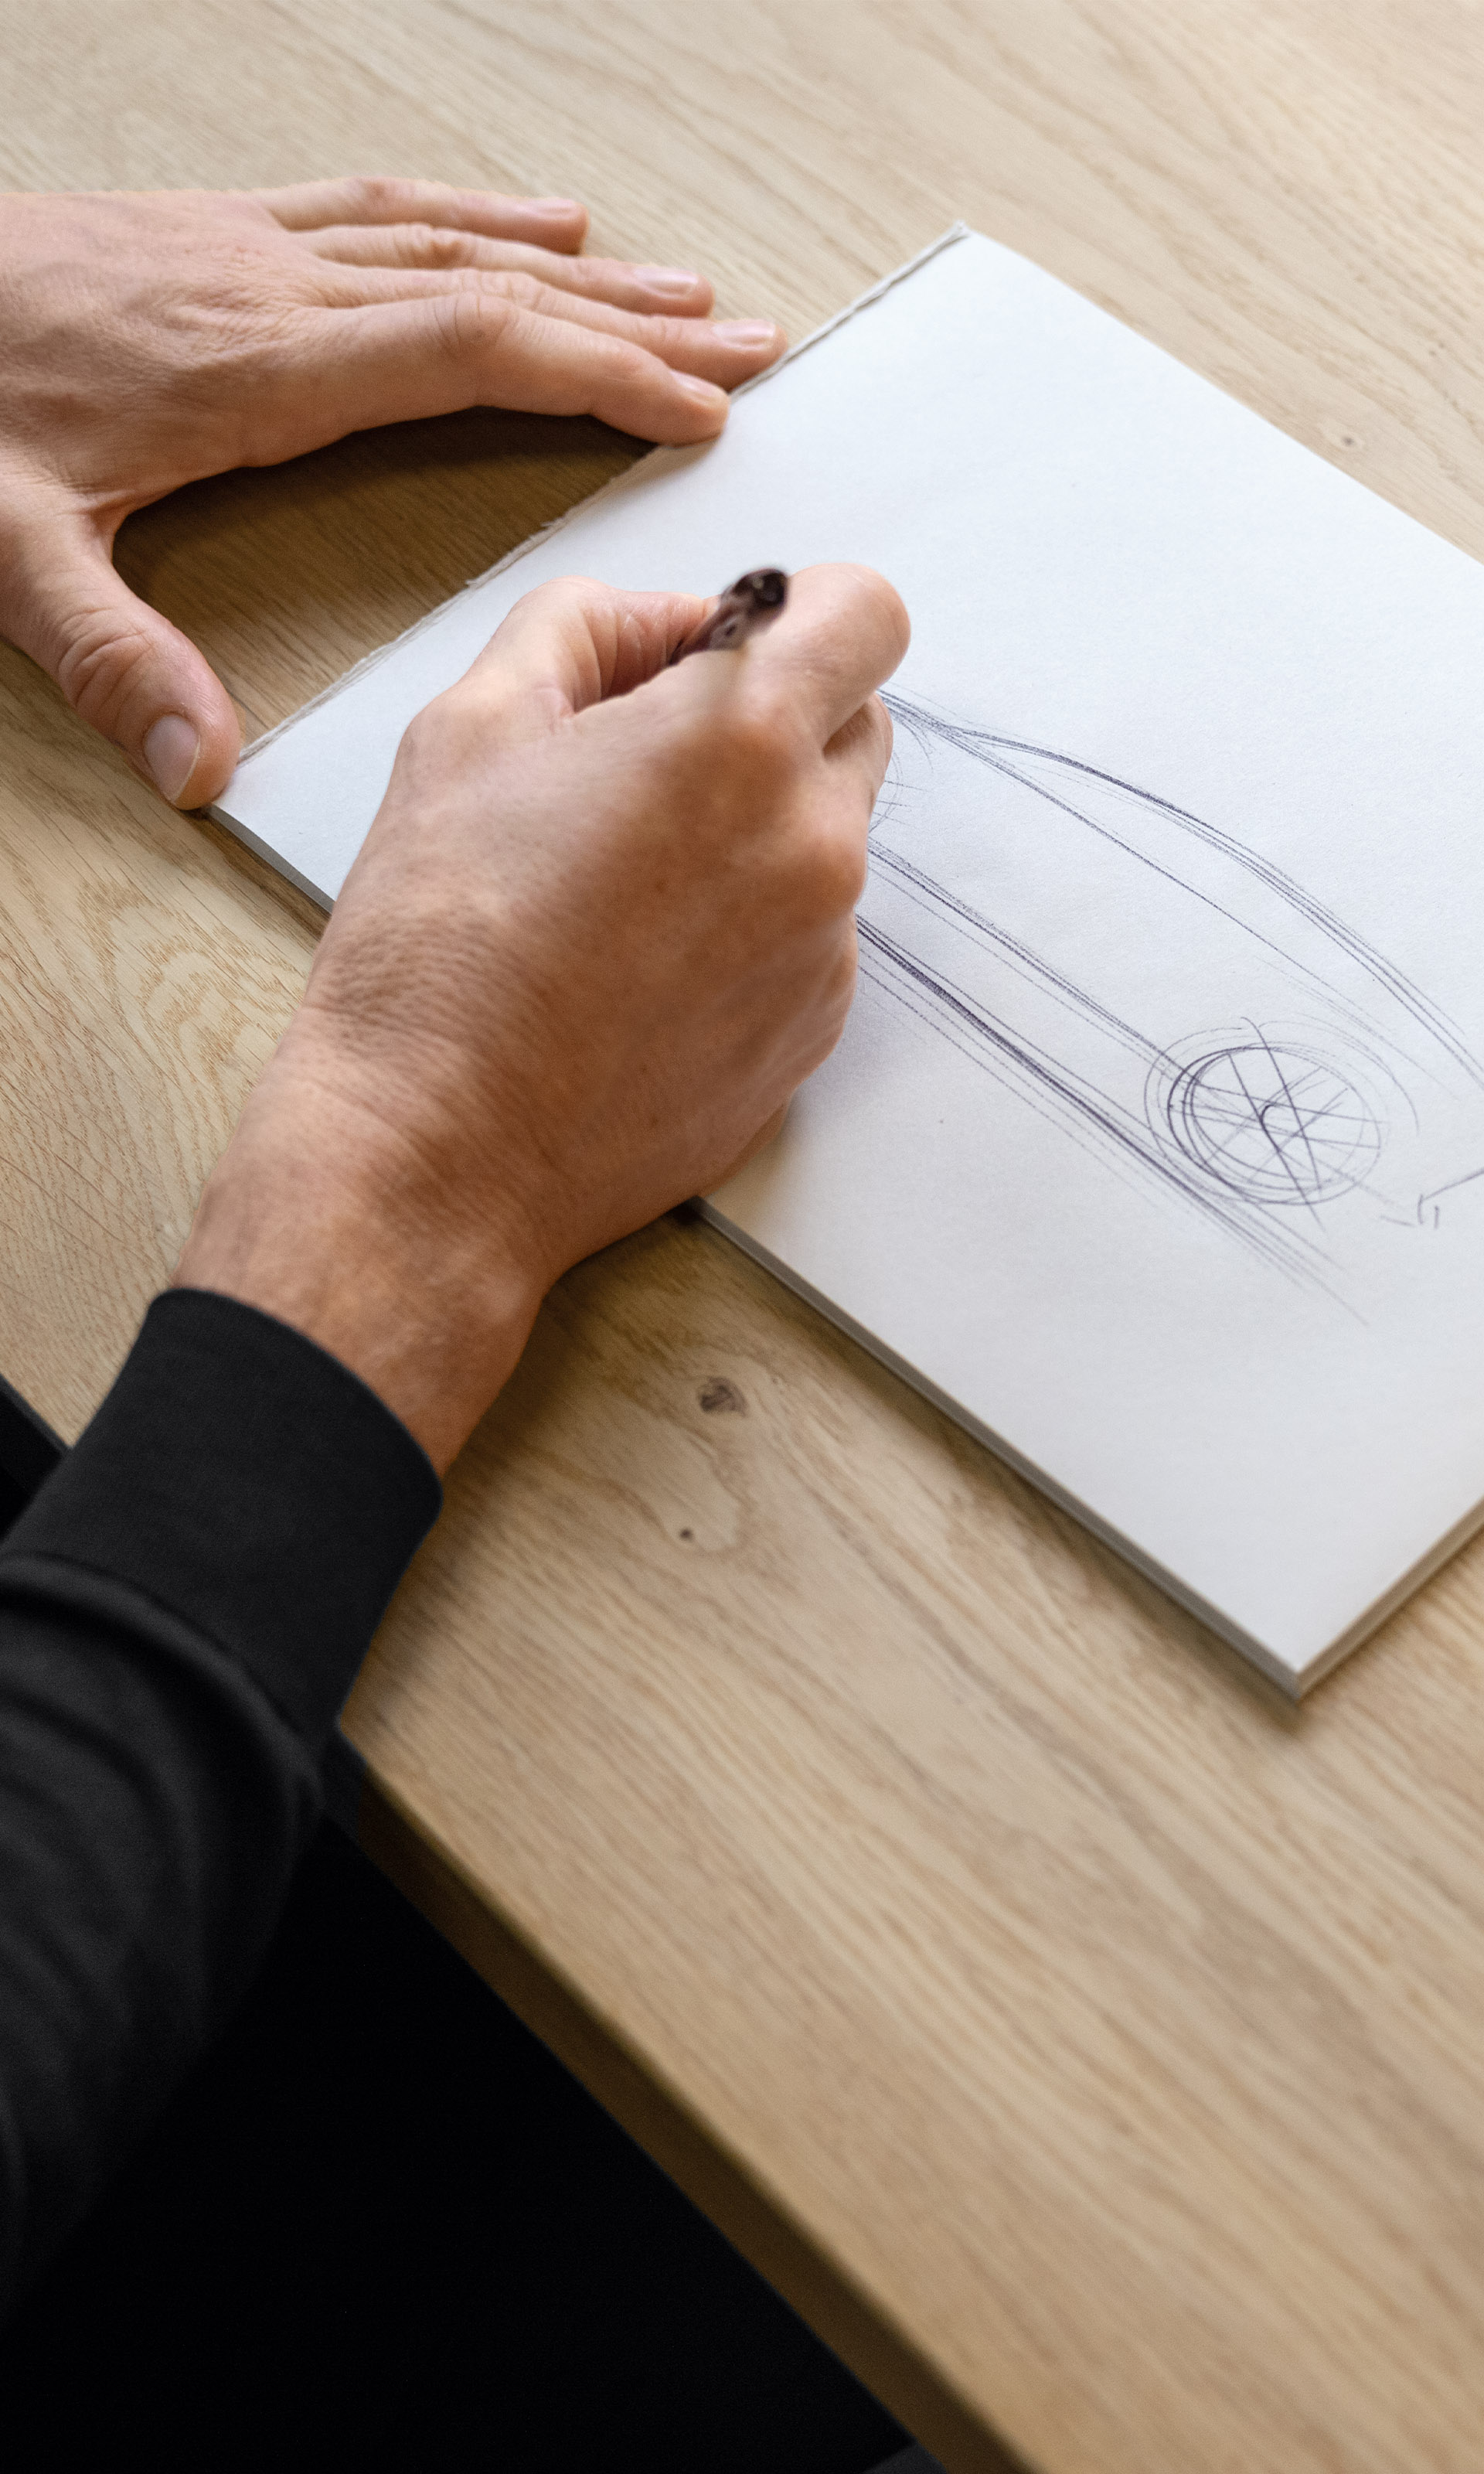 Marc Lichte tegner en skisse av en bil.